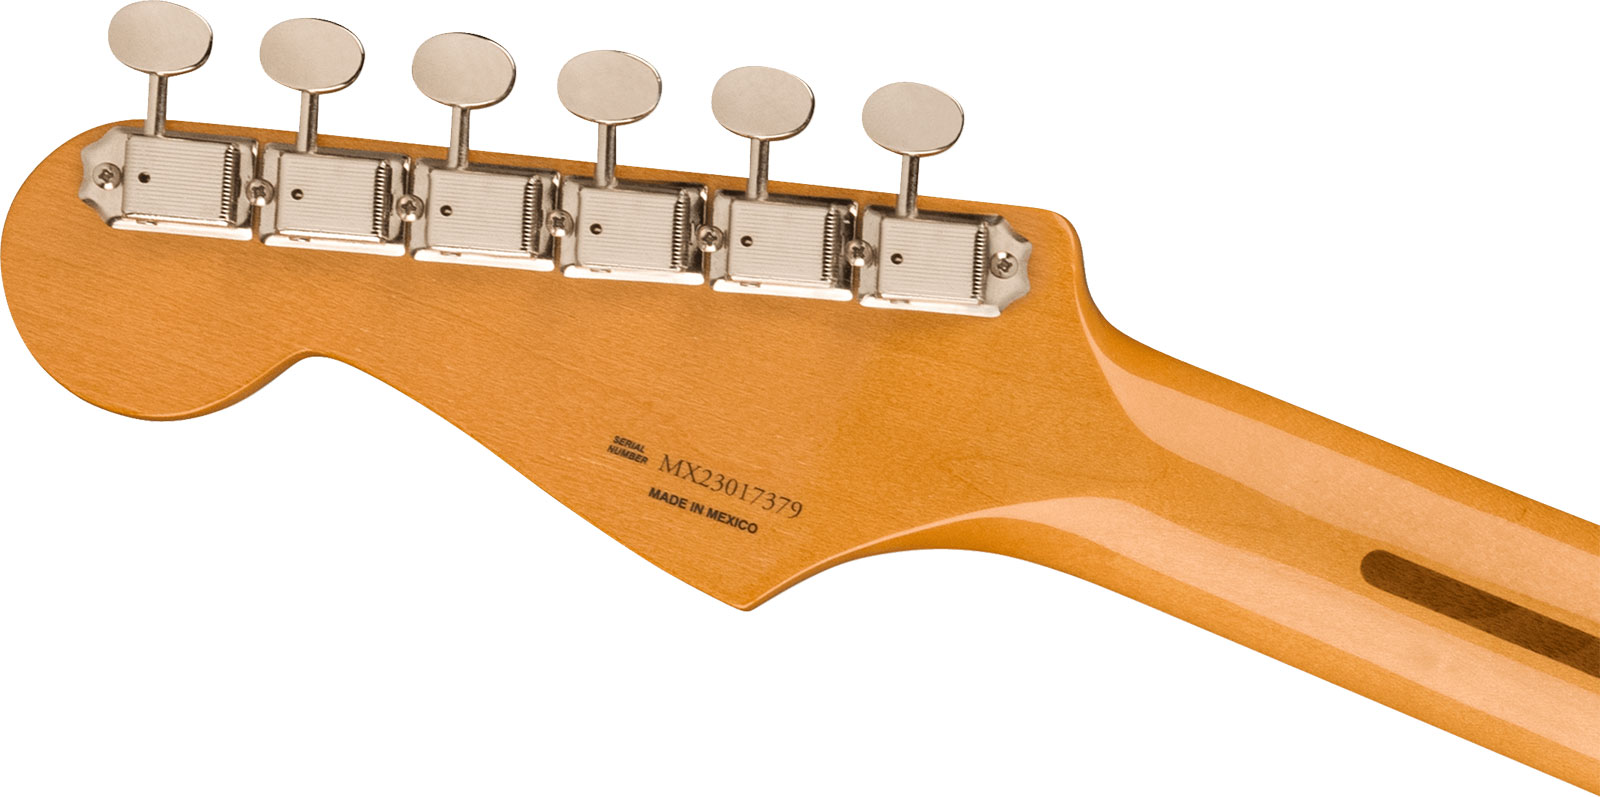 Fender Strat 50s Vintera 2 Mex 3s Trem Mn - Ocean Turquoise - Elektrische gitaar in Str-vorm - Variation 3